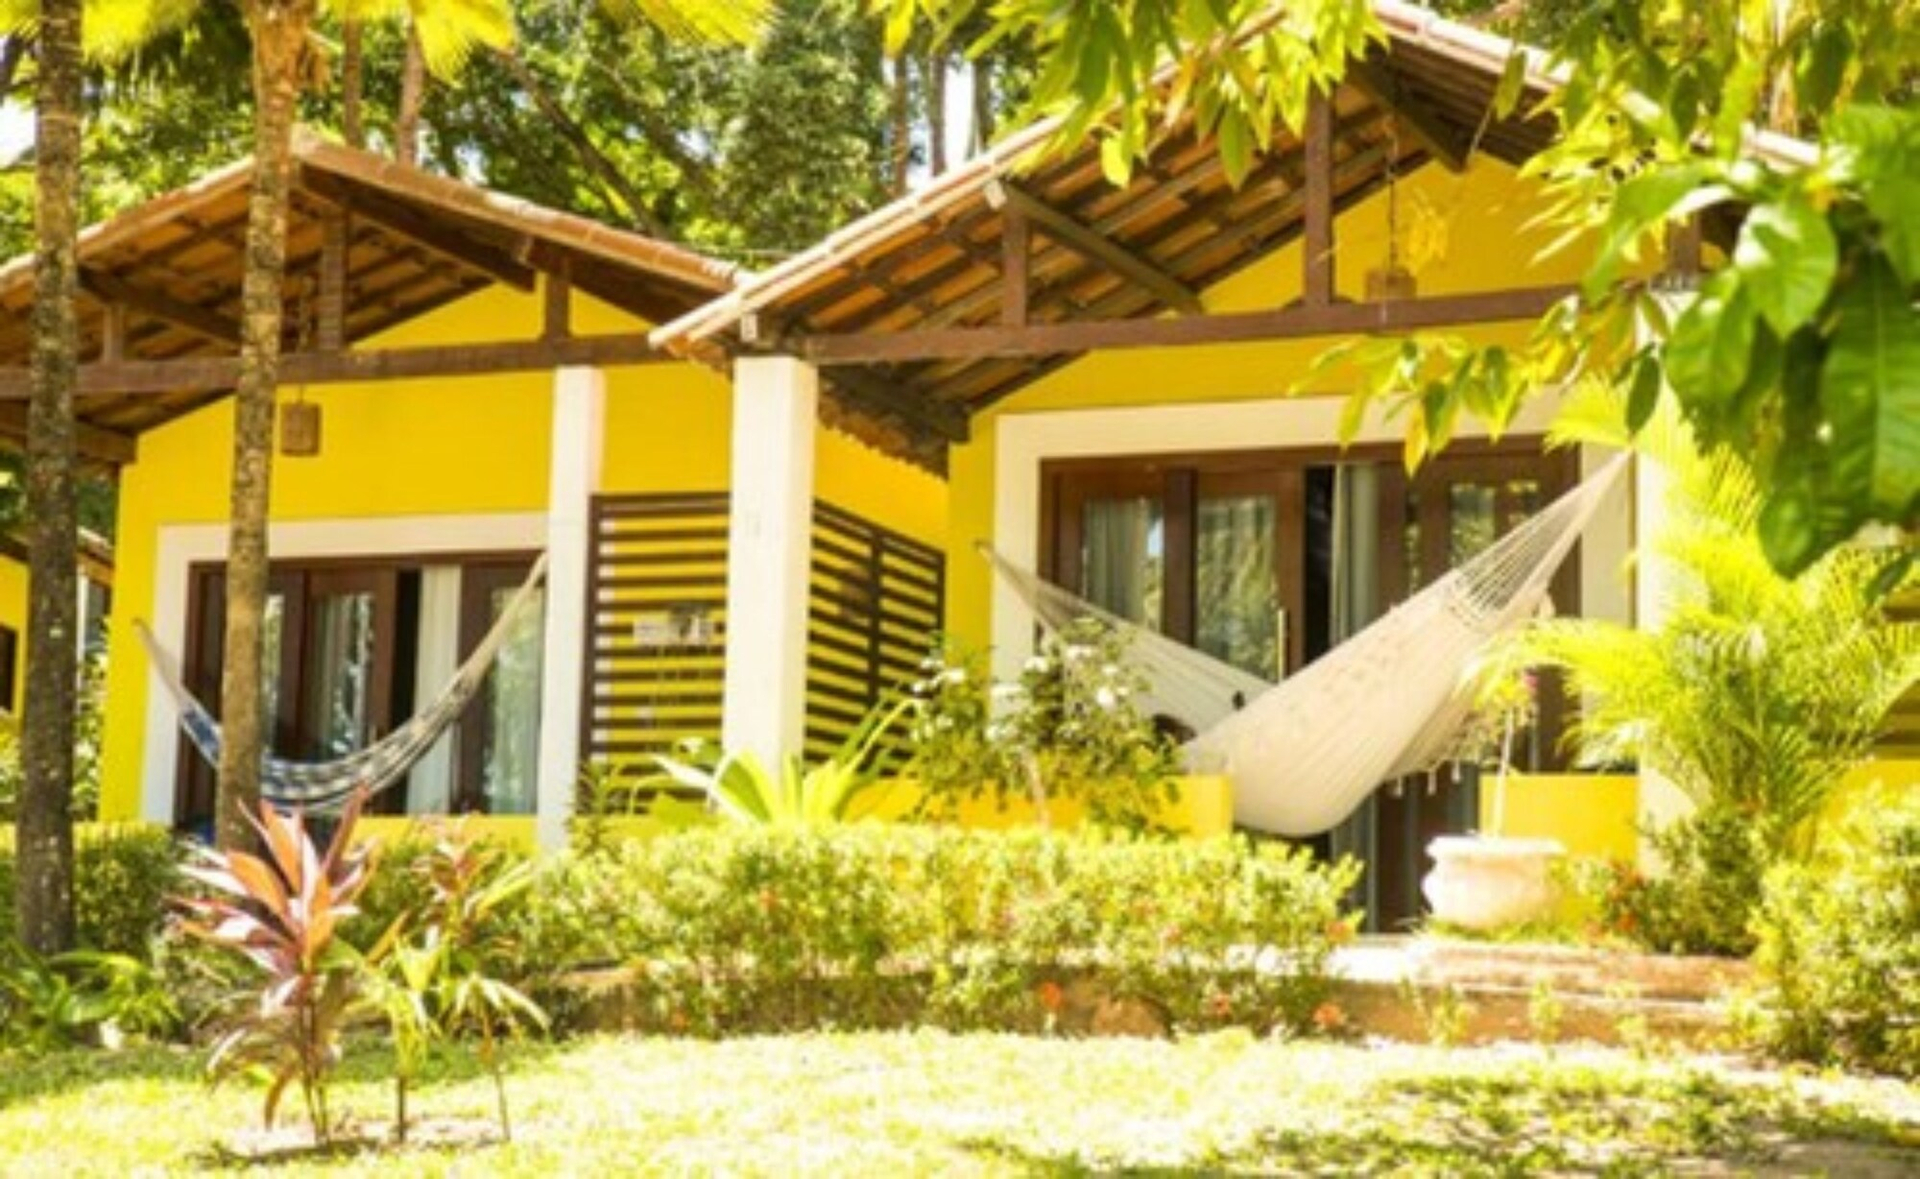 Exterior & Views 2, Hotel Marinas Resort, Tibau do Sul